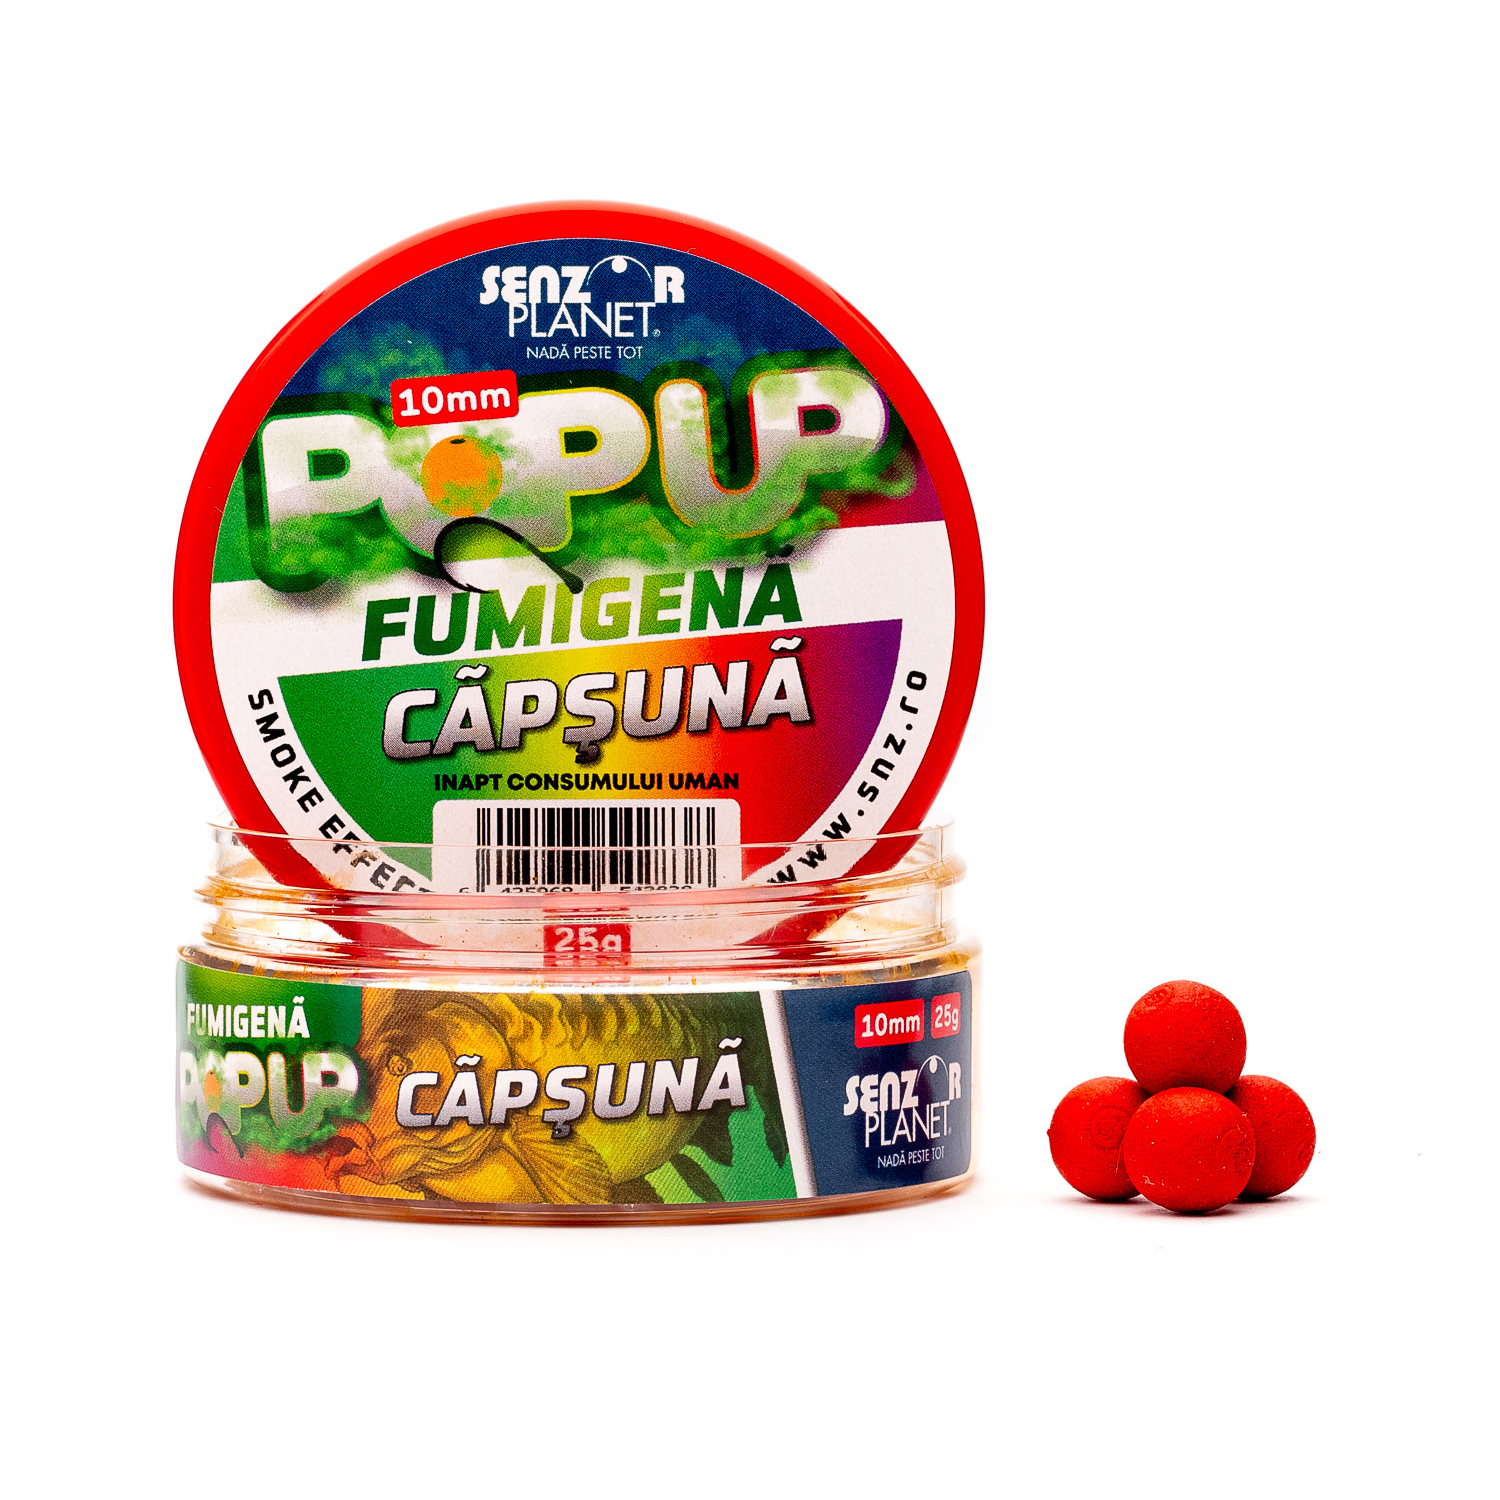 POP-UP FUMIGENA CAPSUNA 10mm 25g